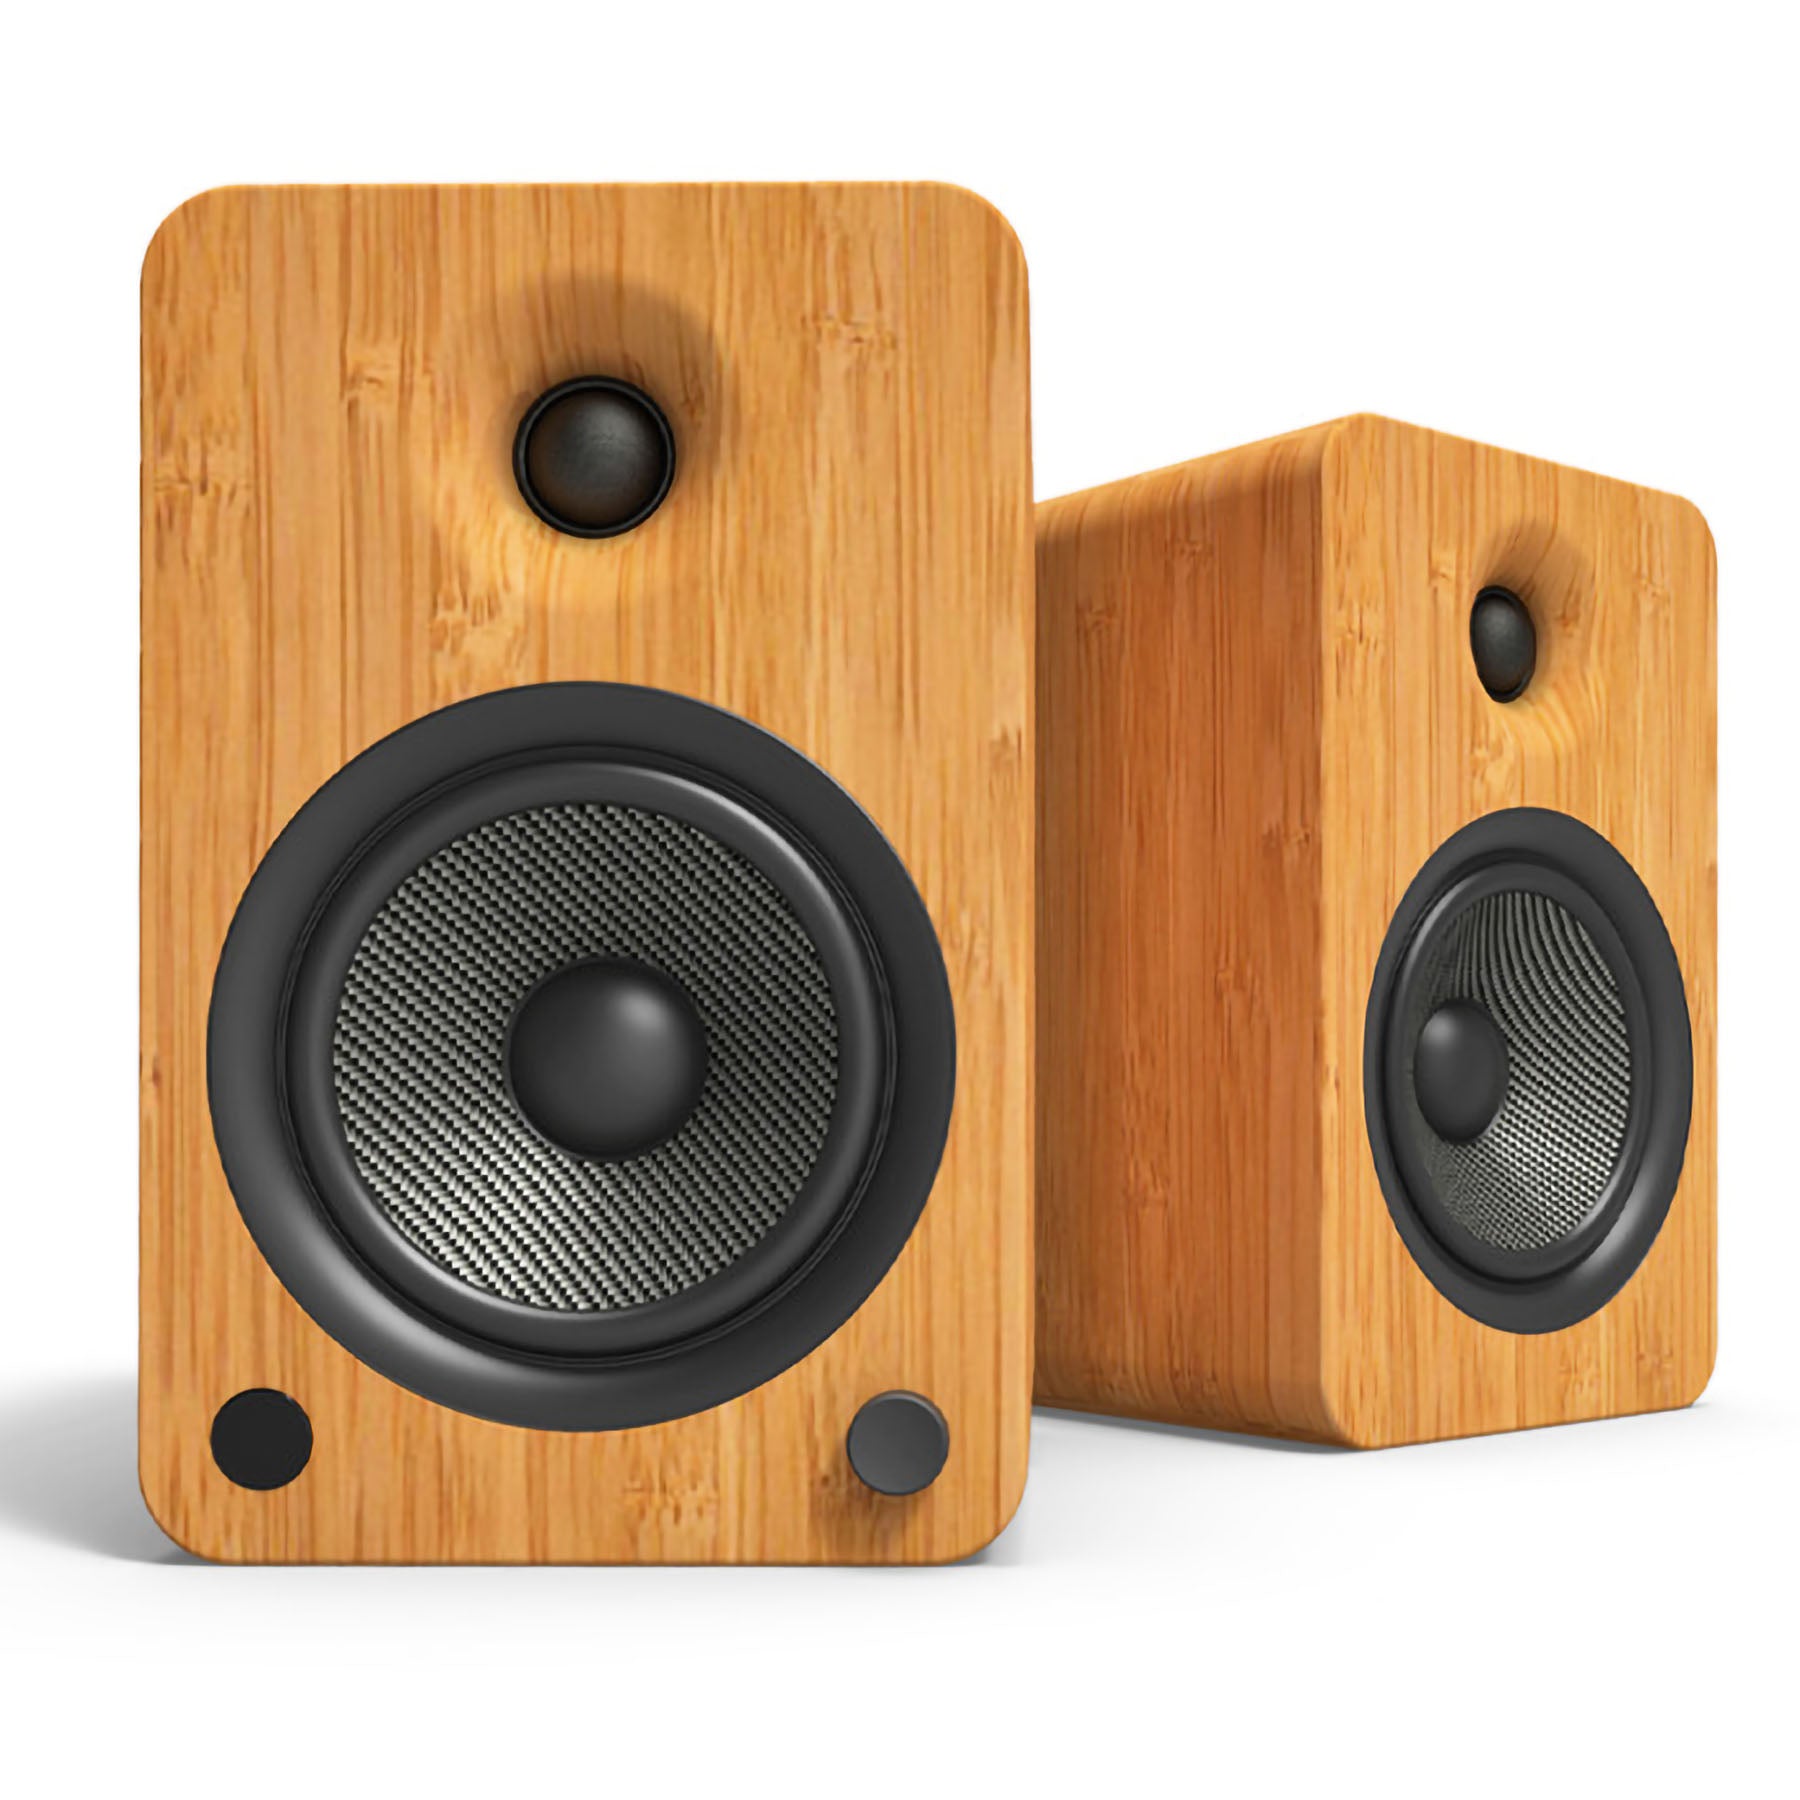 [Ex-demo] Kanto Audio Yu6 Powered Speakers with Buetooth Bookshelf Speakers - Bamboo (pair)